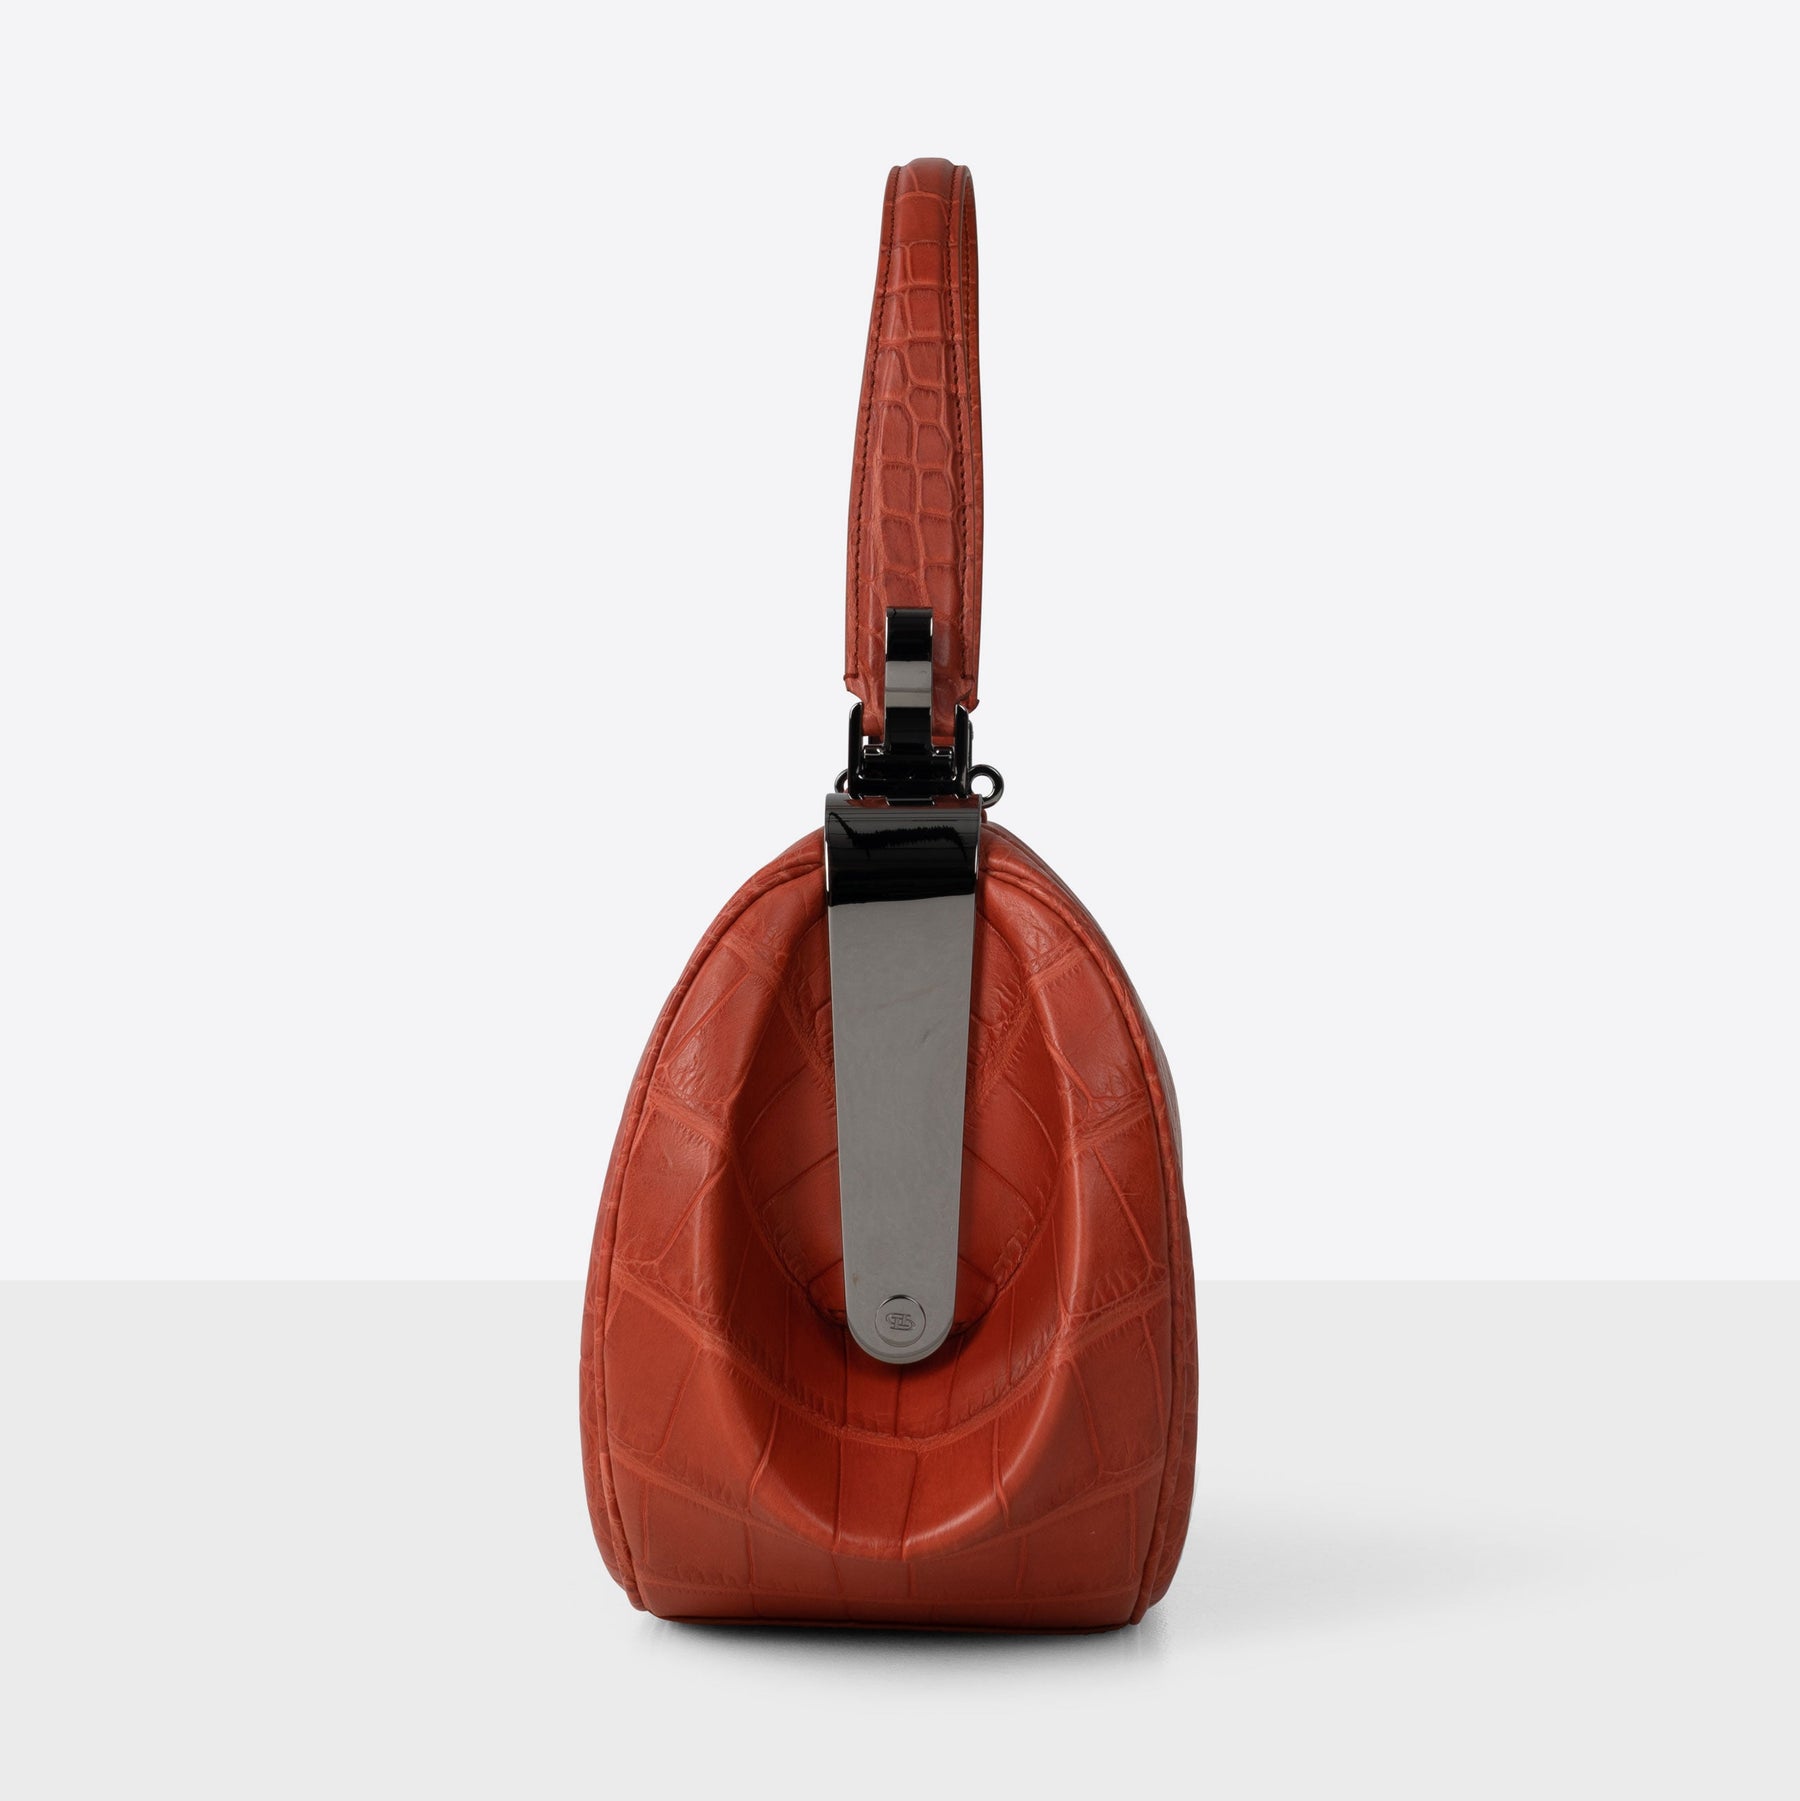 DOTTI Aura Handbag in red brick Alligator. Made in Italy